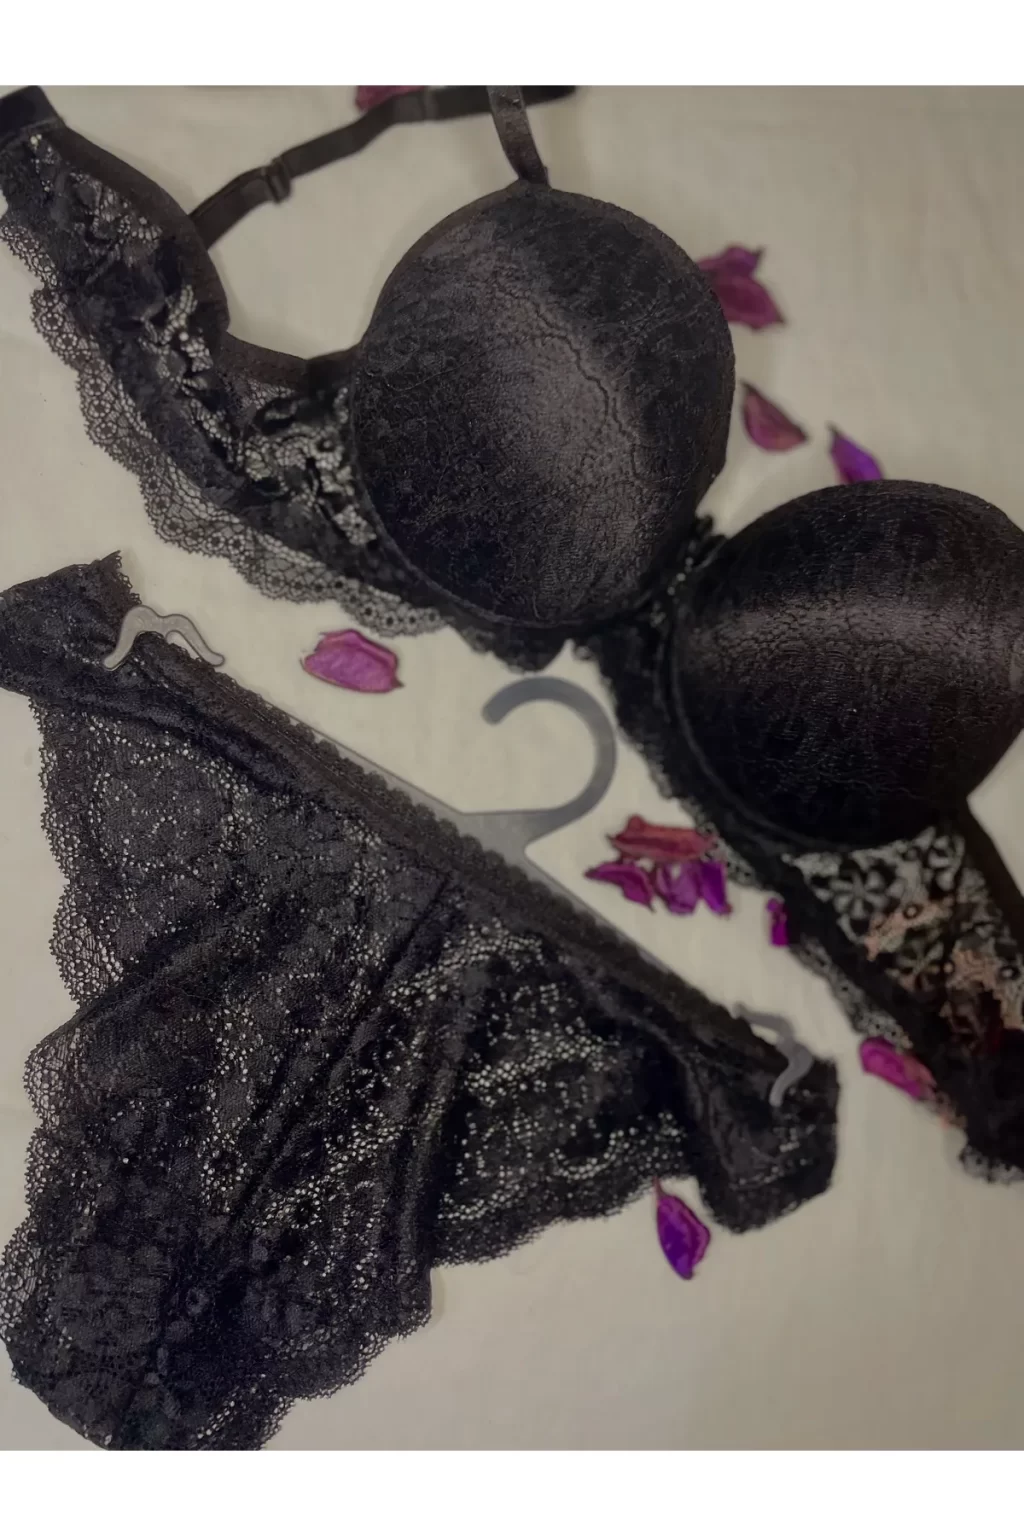 Seamless Lace Bra for Women Black Lingerie Elegant Bras Push Up